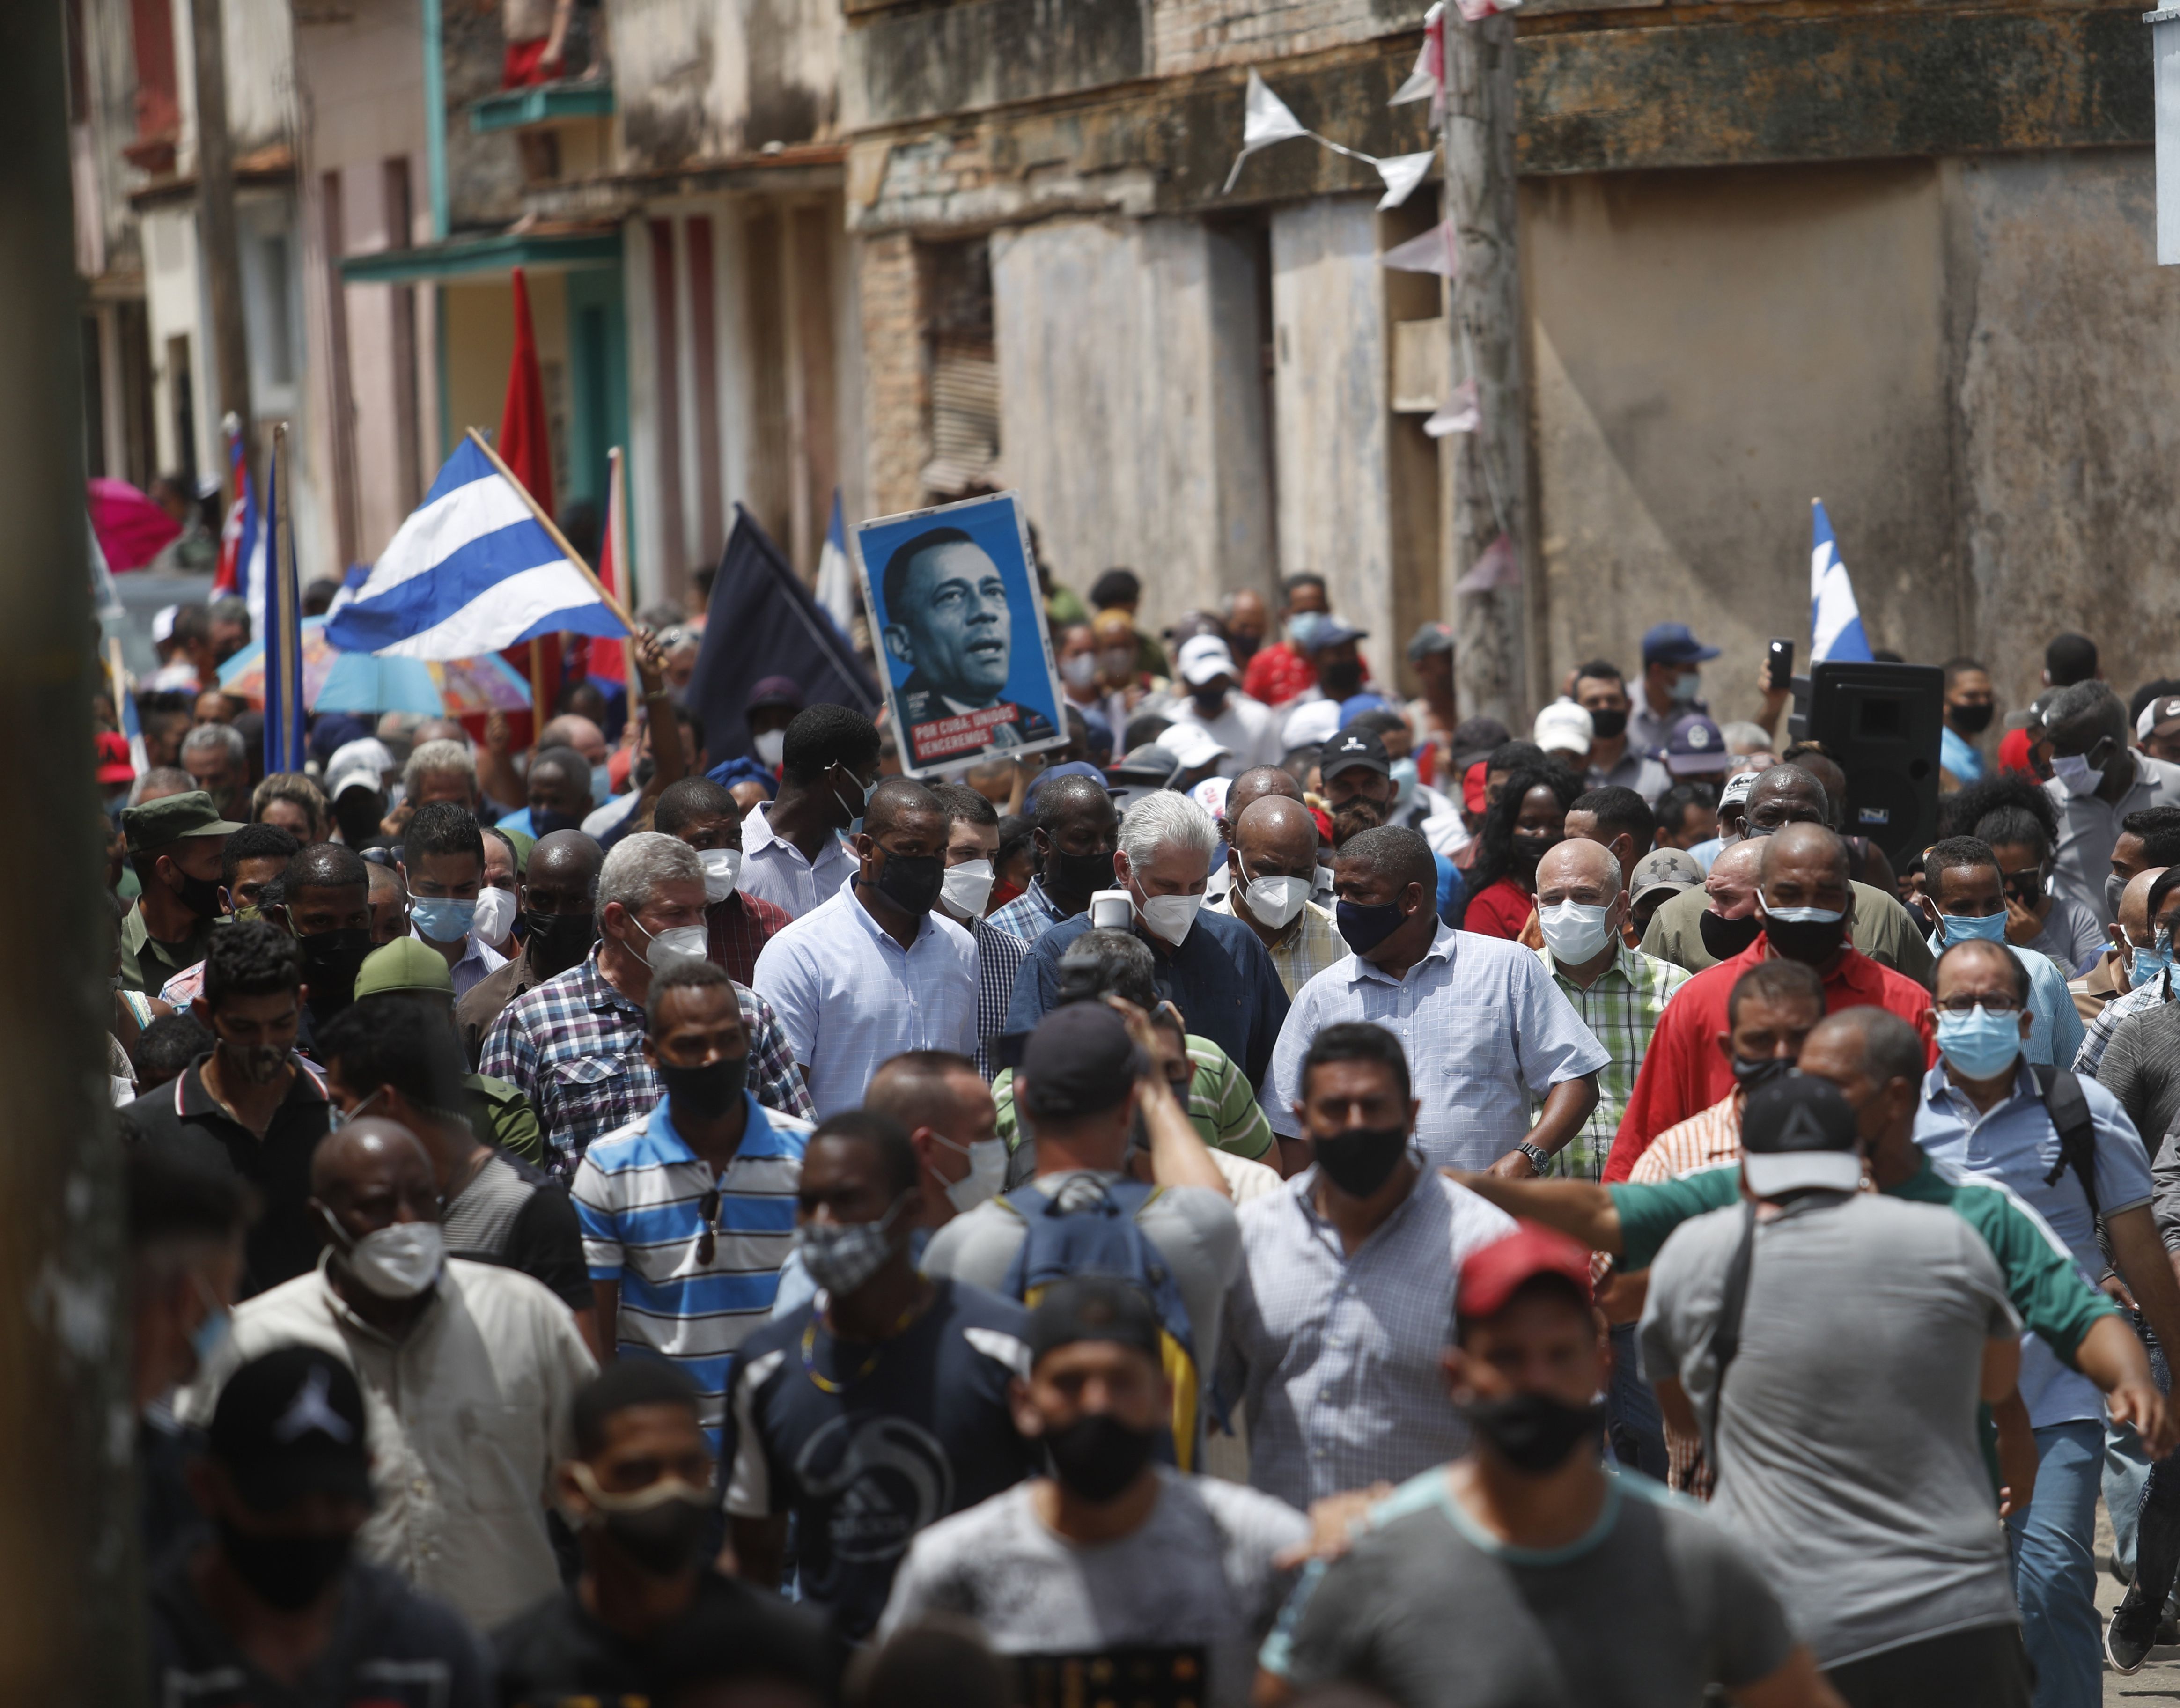  Cuban President Miguel Diaz-Canel (C) walks alongside his supporters in the town of San Antonio de los Banos, Cuba, Sunday, July 11